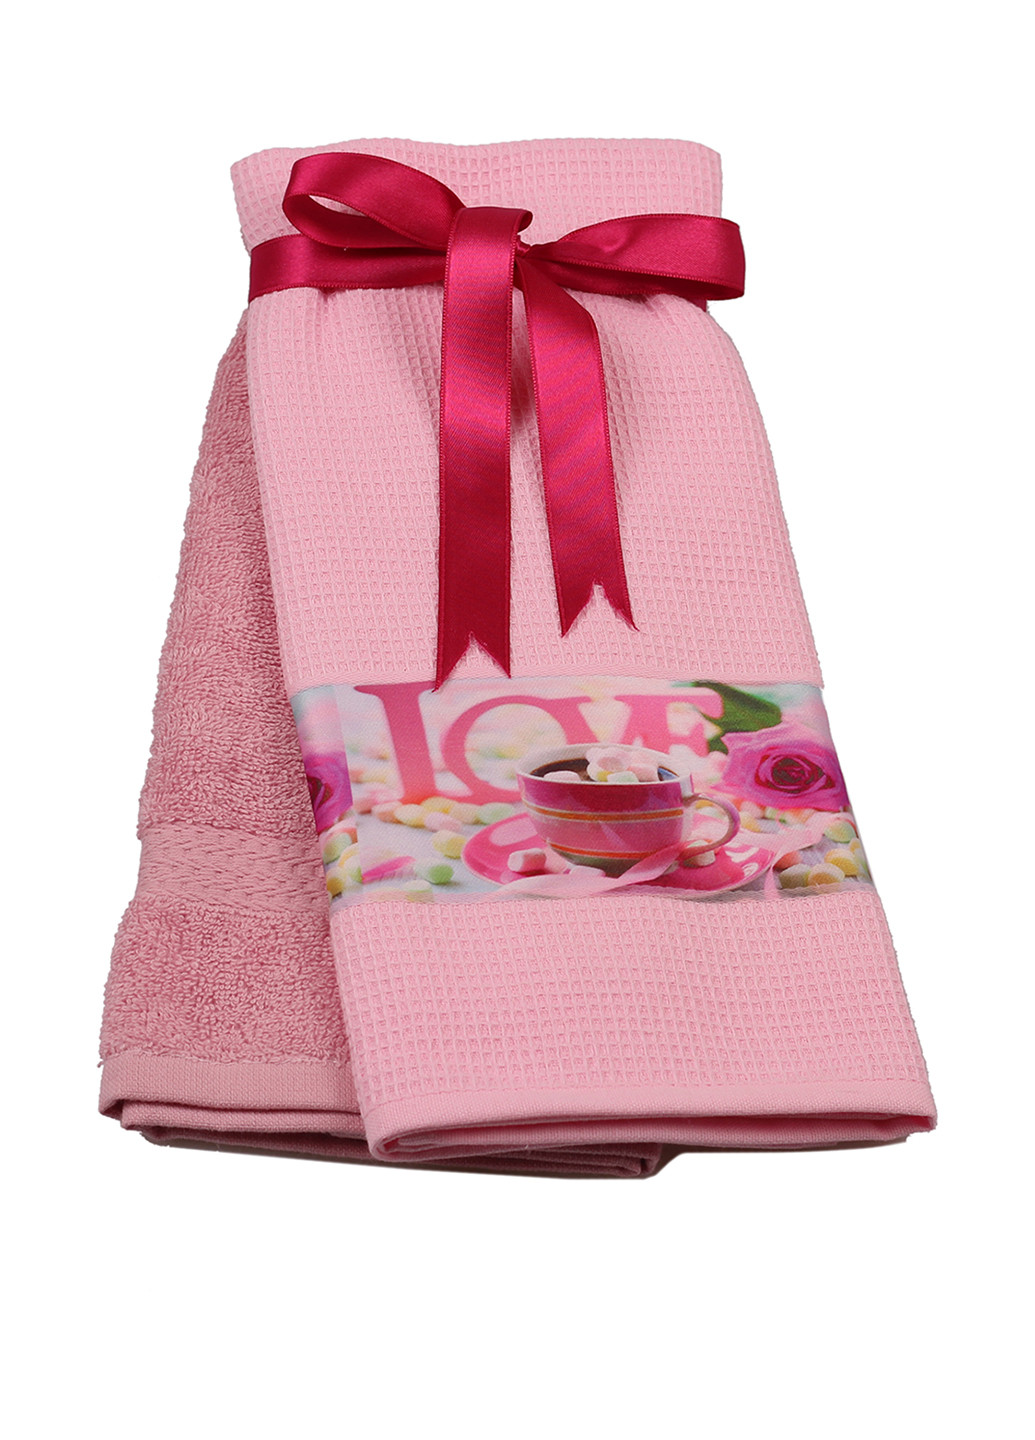 Maxxsoft полотенце (2 шт.) розовый производство - Турция